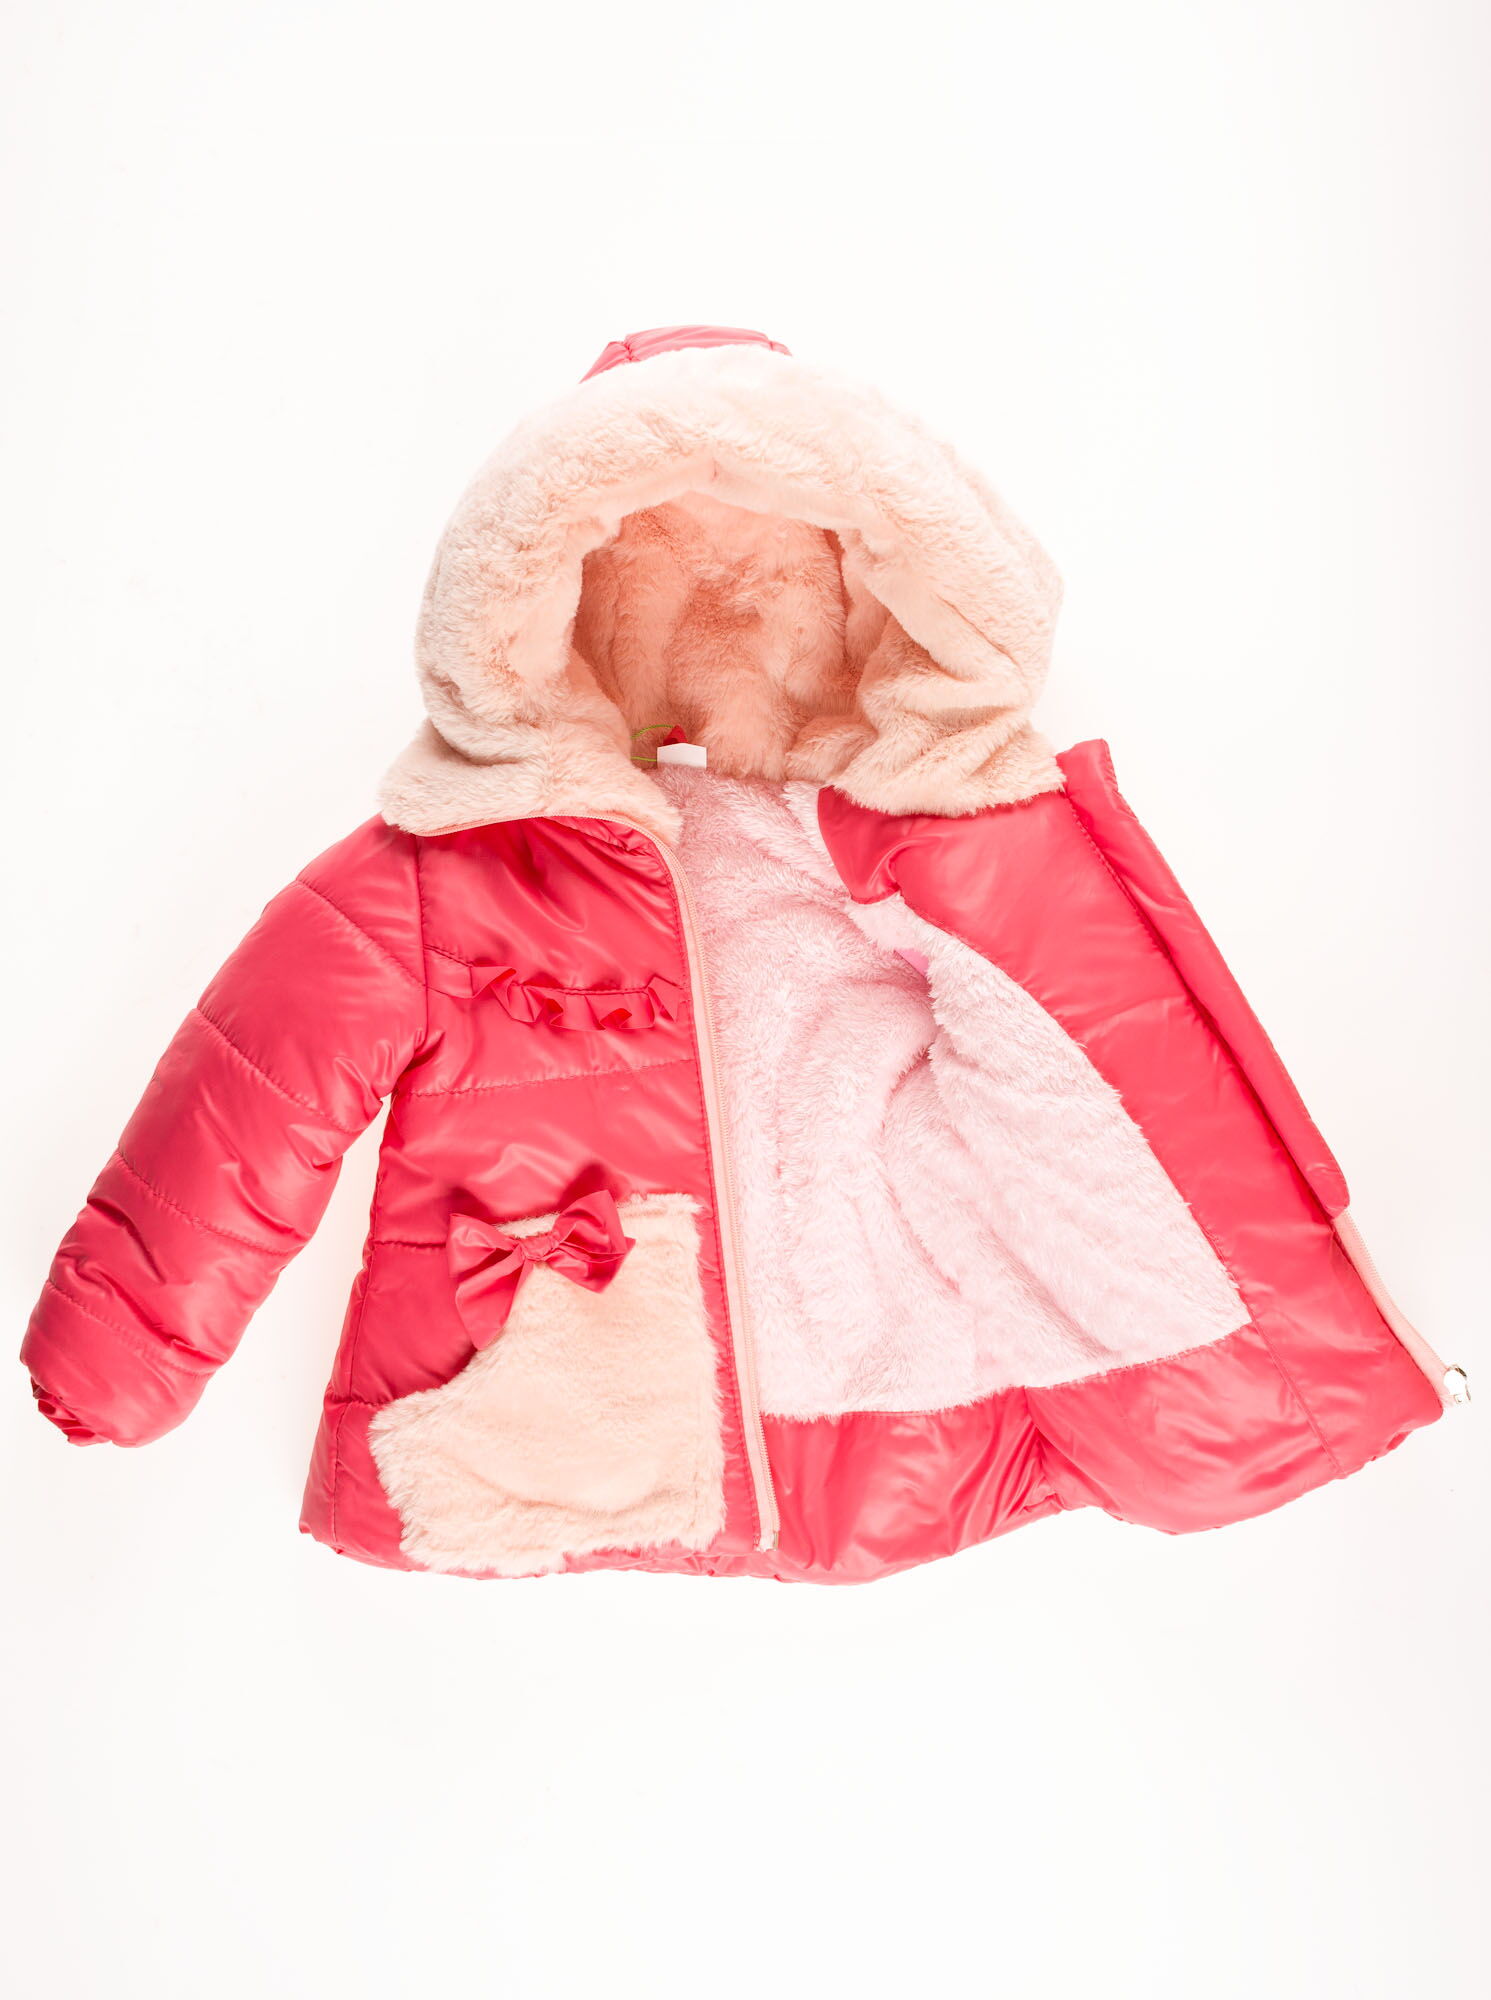 Комбинезон раздельный зимний для девочки (куртка+штаны) ОДЯГАЙКО коралловый 20023/32005 - цена